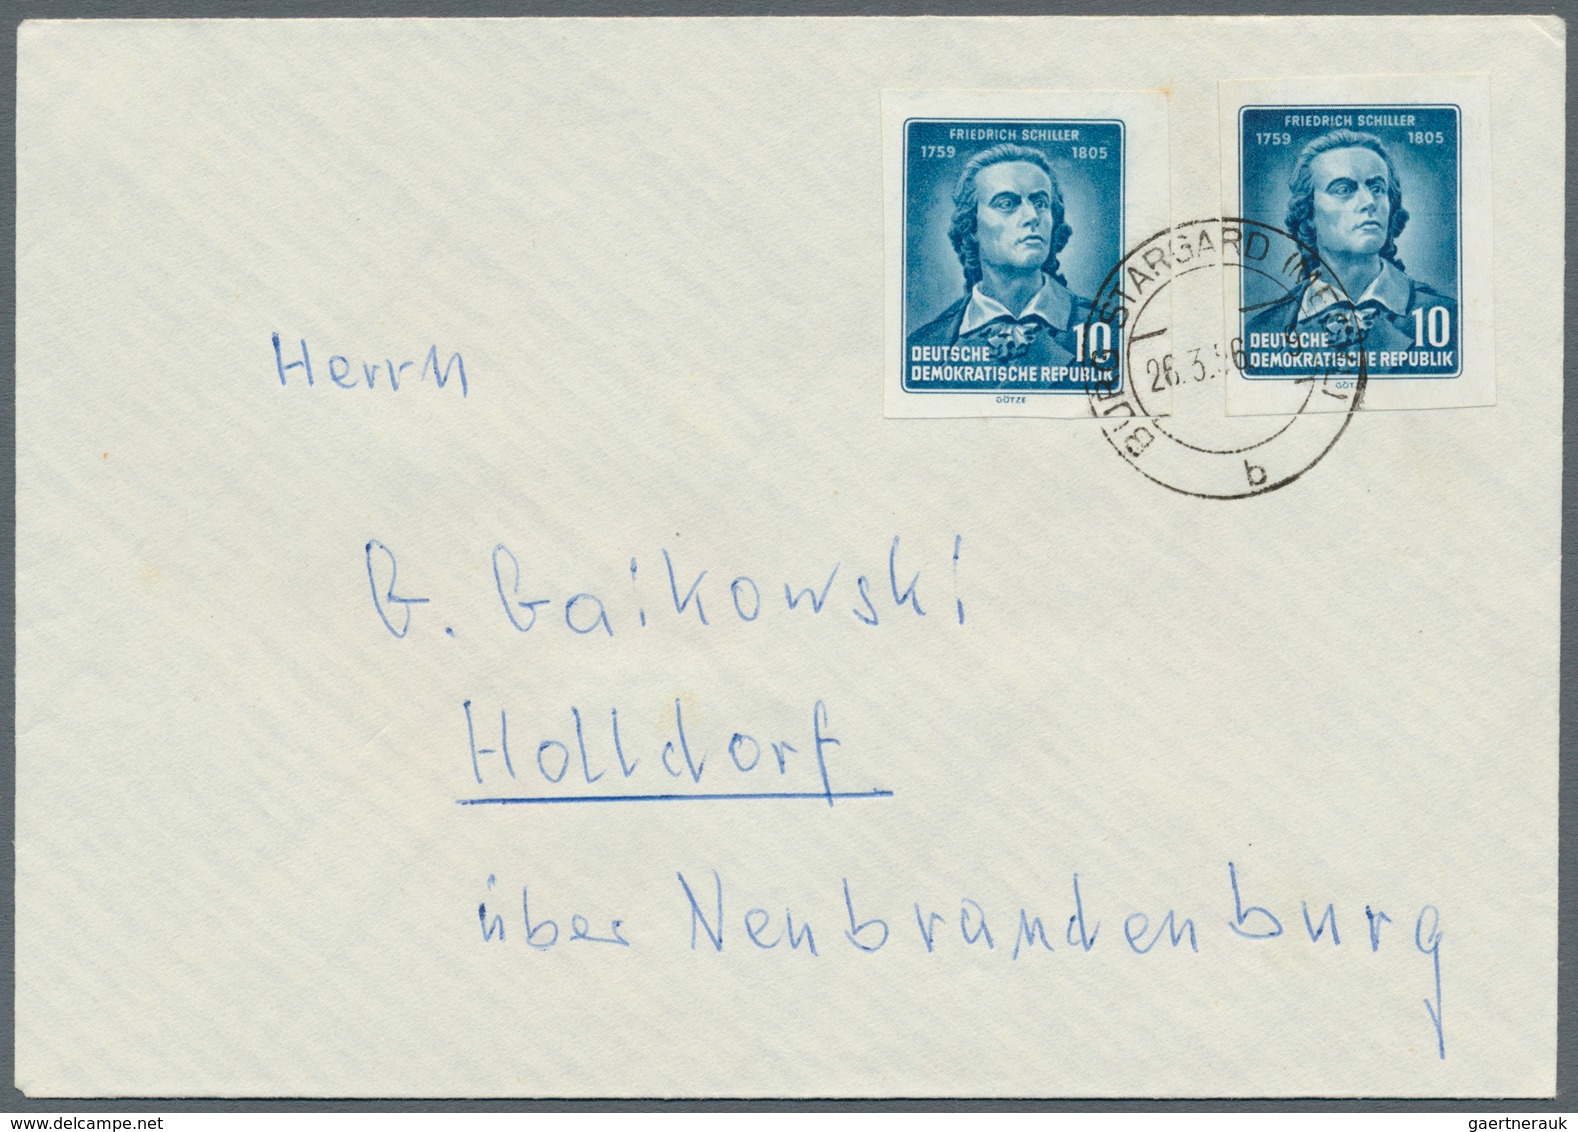 DDR: 1949/1990, reichhaltiger und vielseitiger Bestand von ca. 1.020 Briefen und Karten, alle echt g